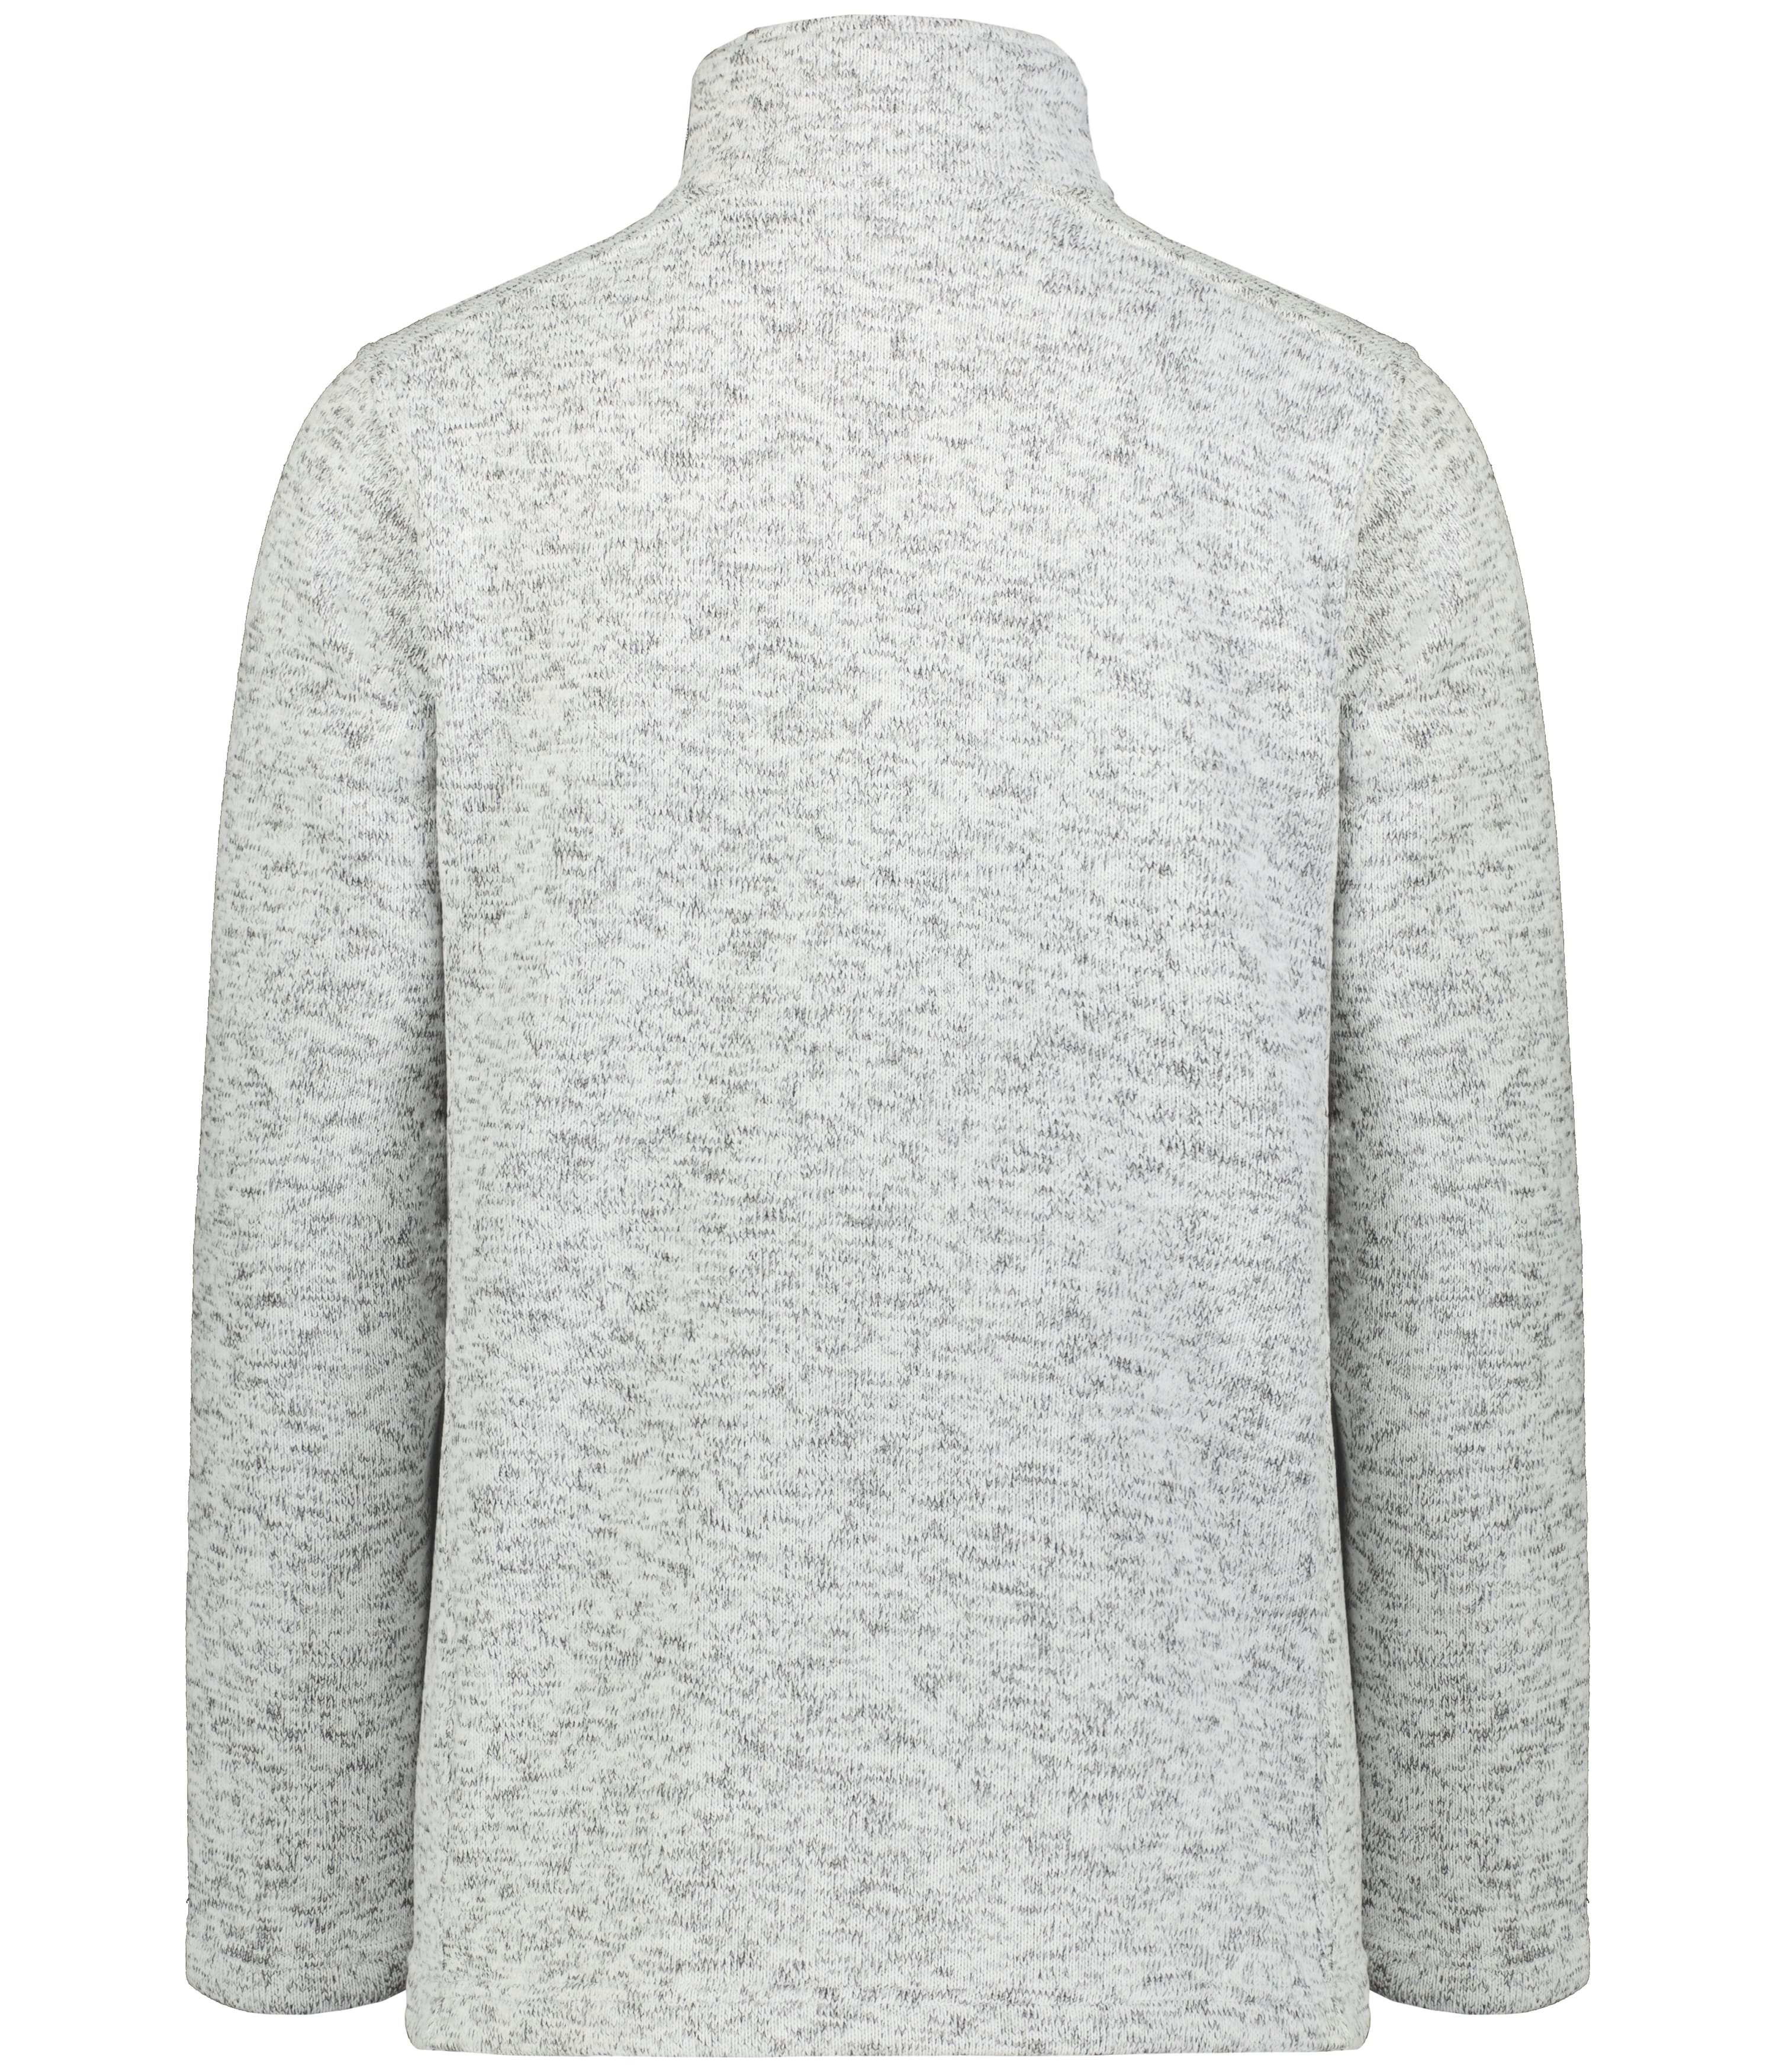 Holloway 223540  Alpine Sweater Fleece 1/4 Zip Pullover